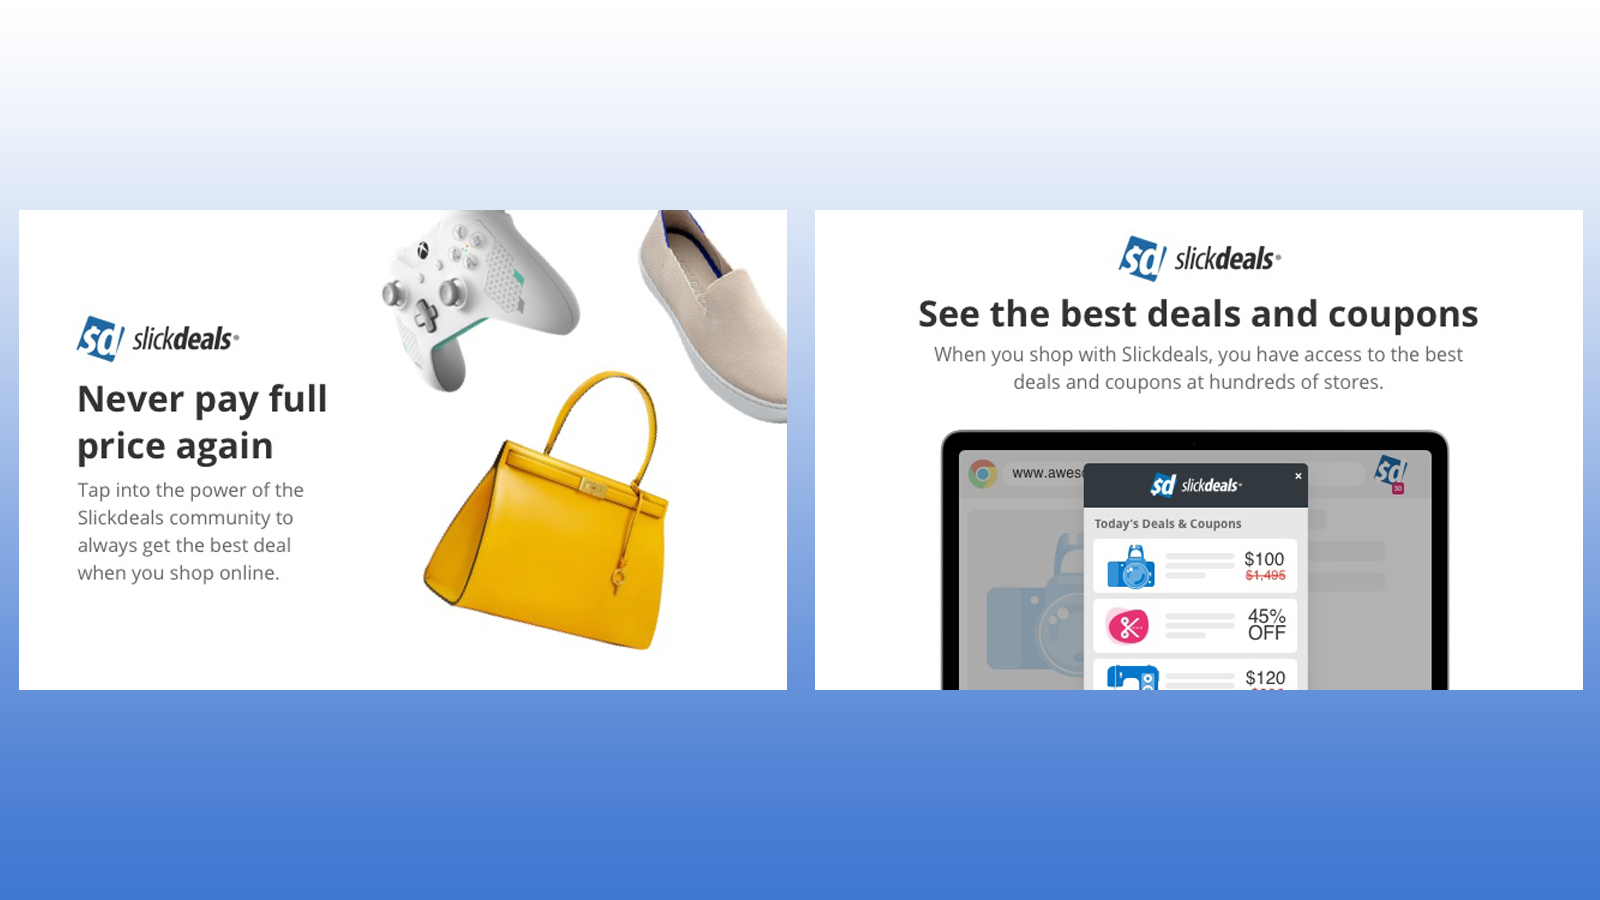 SlickDeals Chrome webbläsartillägg visar fantastiska erbjudanden på produkter som kläder, spel och accessoarer